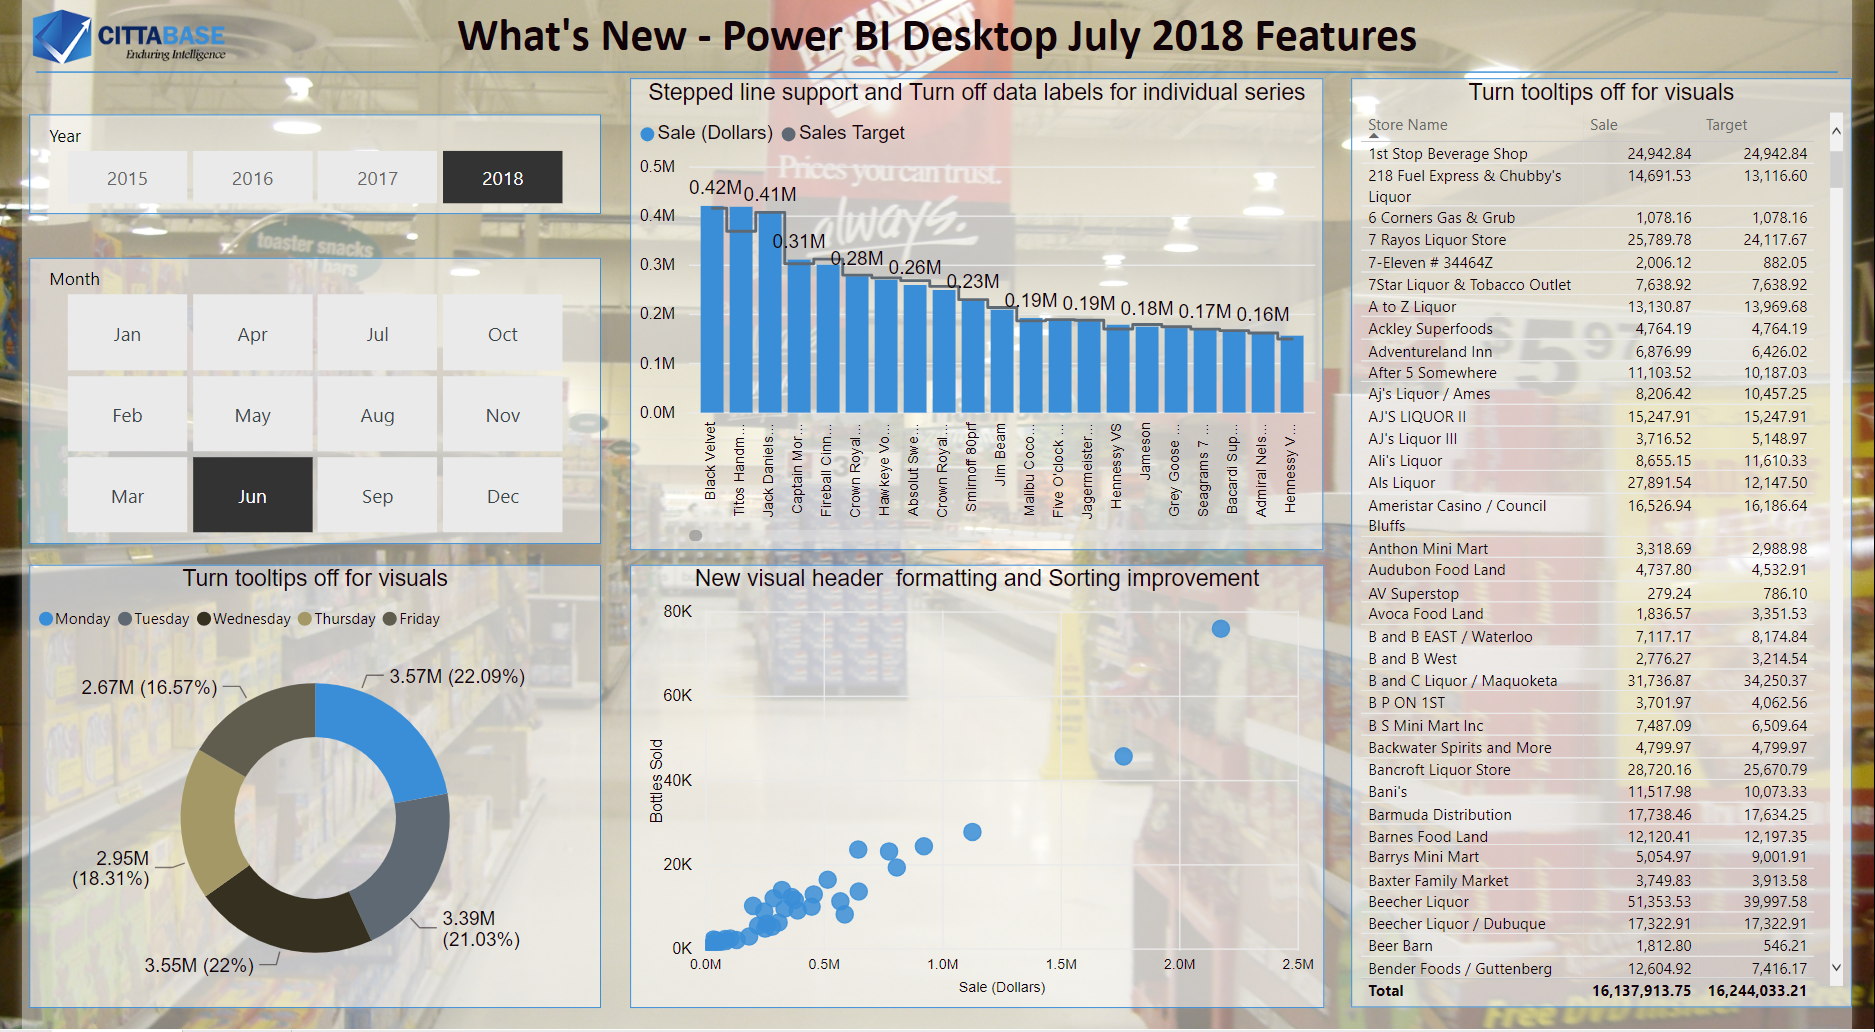 Power BI Desktop July 2018 features